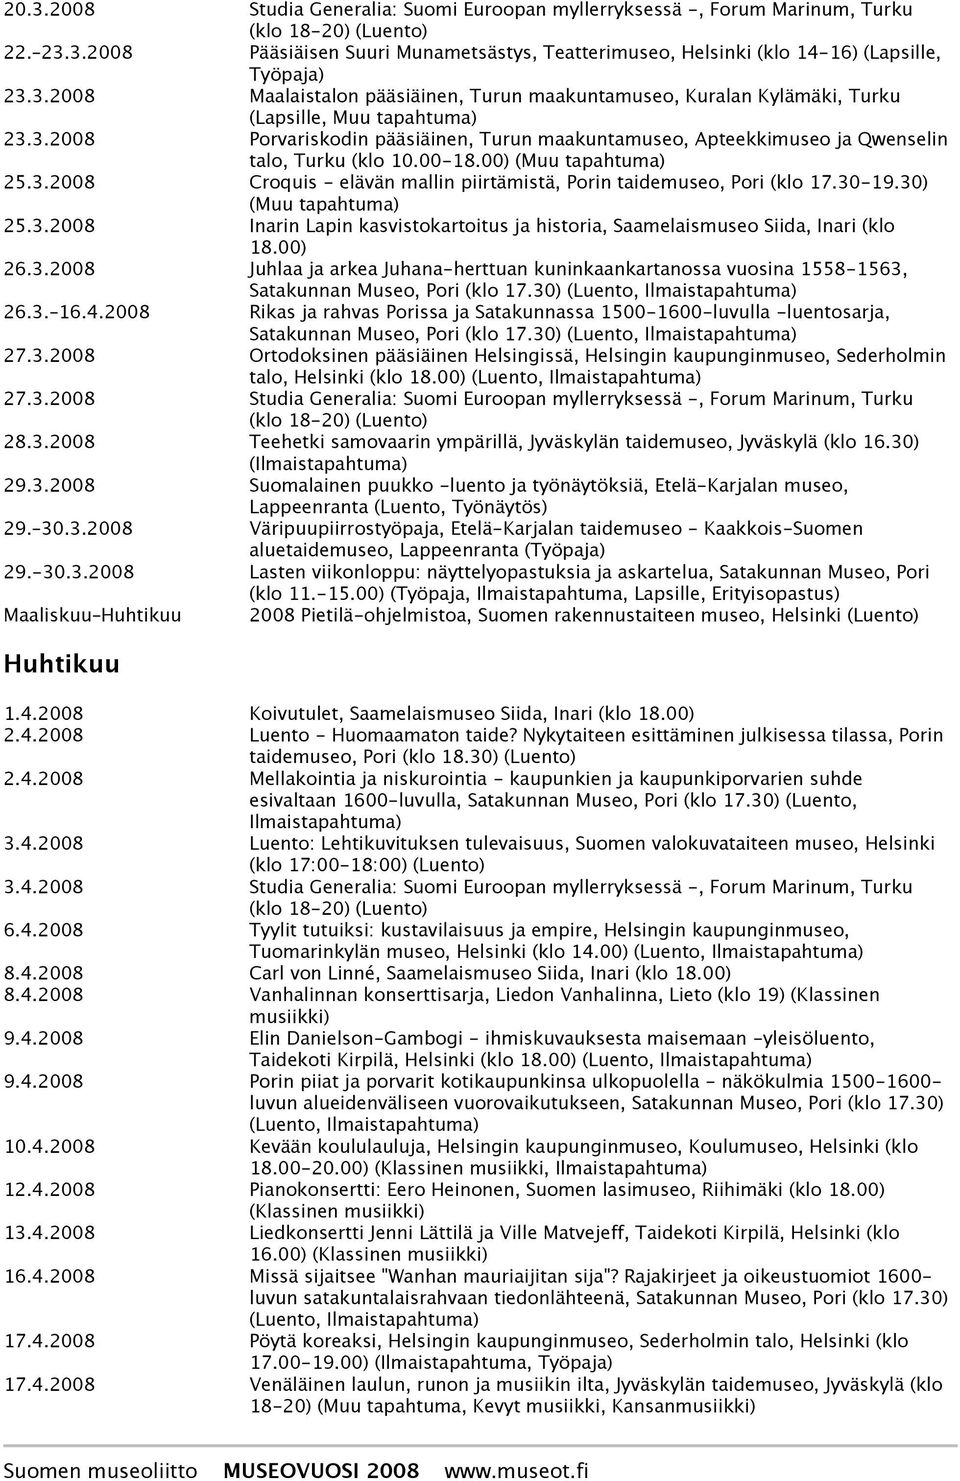 30) (Muu 25.3.2008 Inarin Lapin kasvistokartoitus ja historia, Saamelaismuseo Siida, Inari (klo 18.00) 26.3.2008 Juhlaa ja arkea Juhana-herttuan kuninkaankartanossa vuosina 1558-1563, Satakunnan Museo, Pori (klo 17.